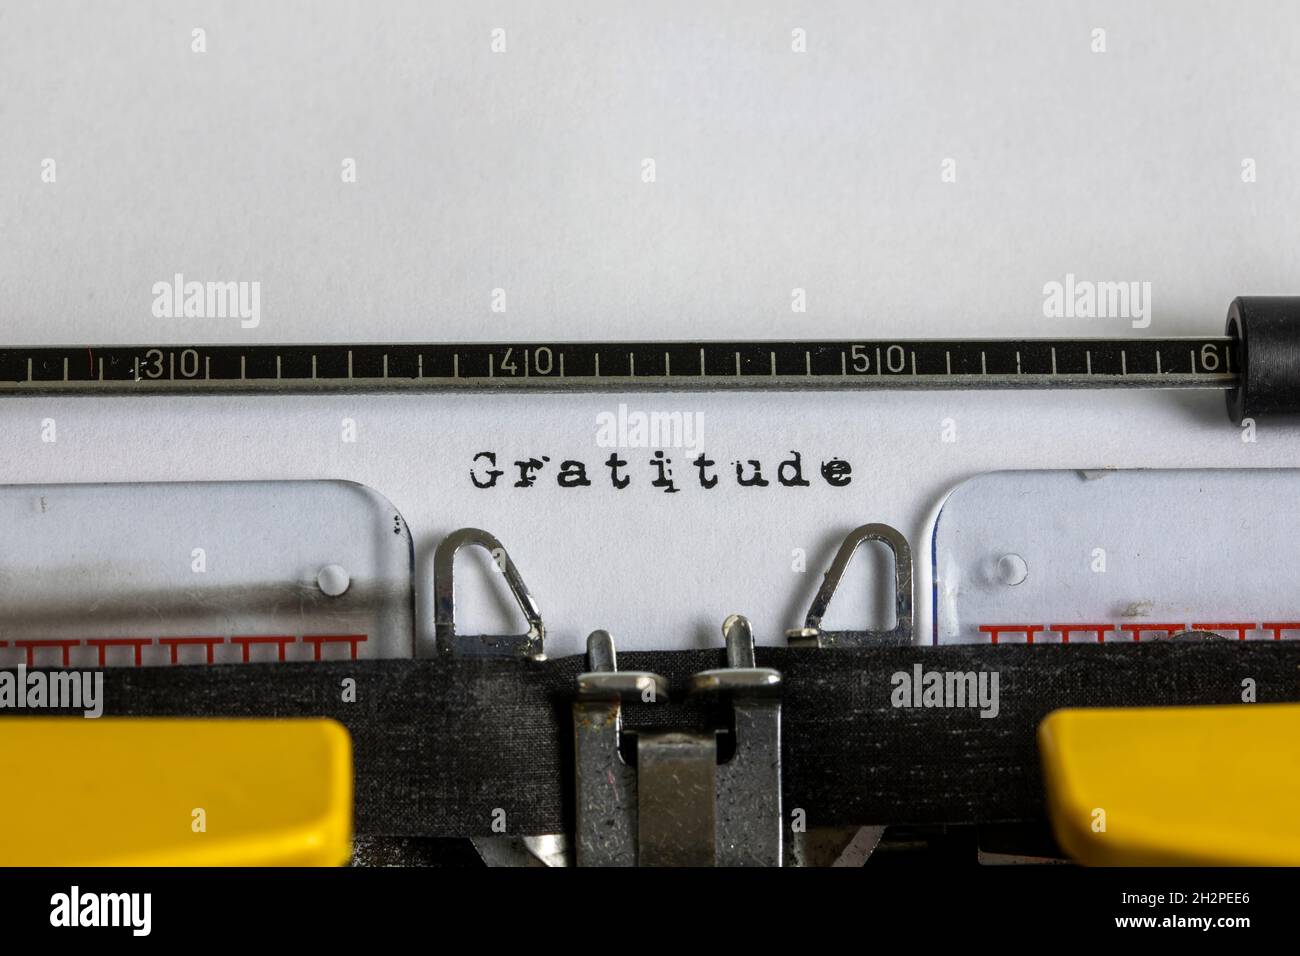 Gratitudine scritta su una vecchia macchina da scrivere Foto Stock